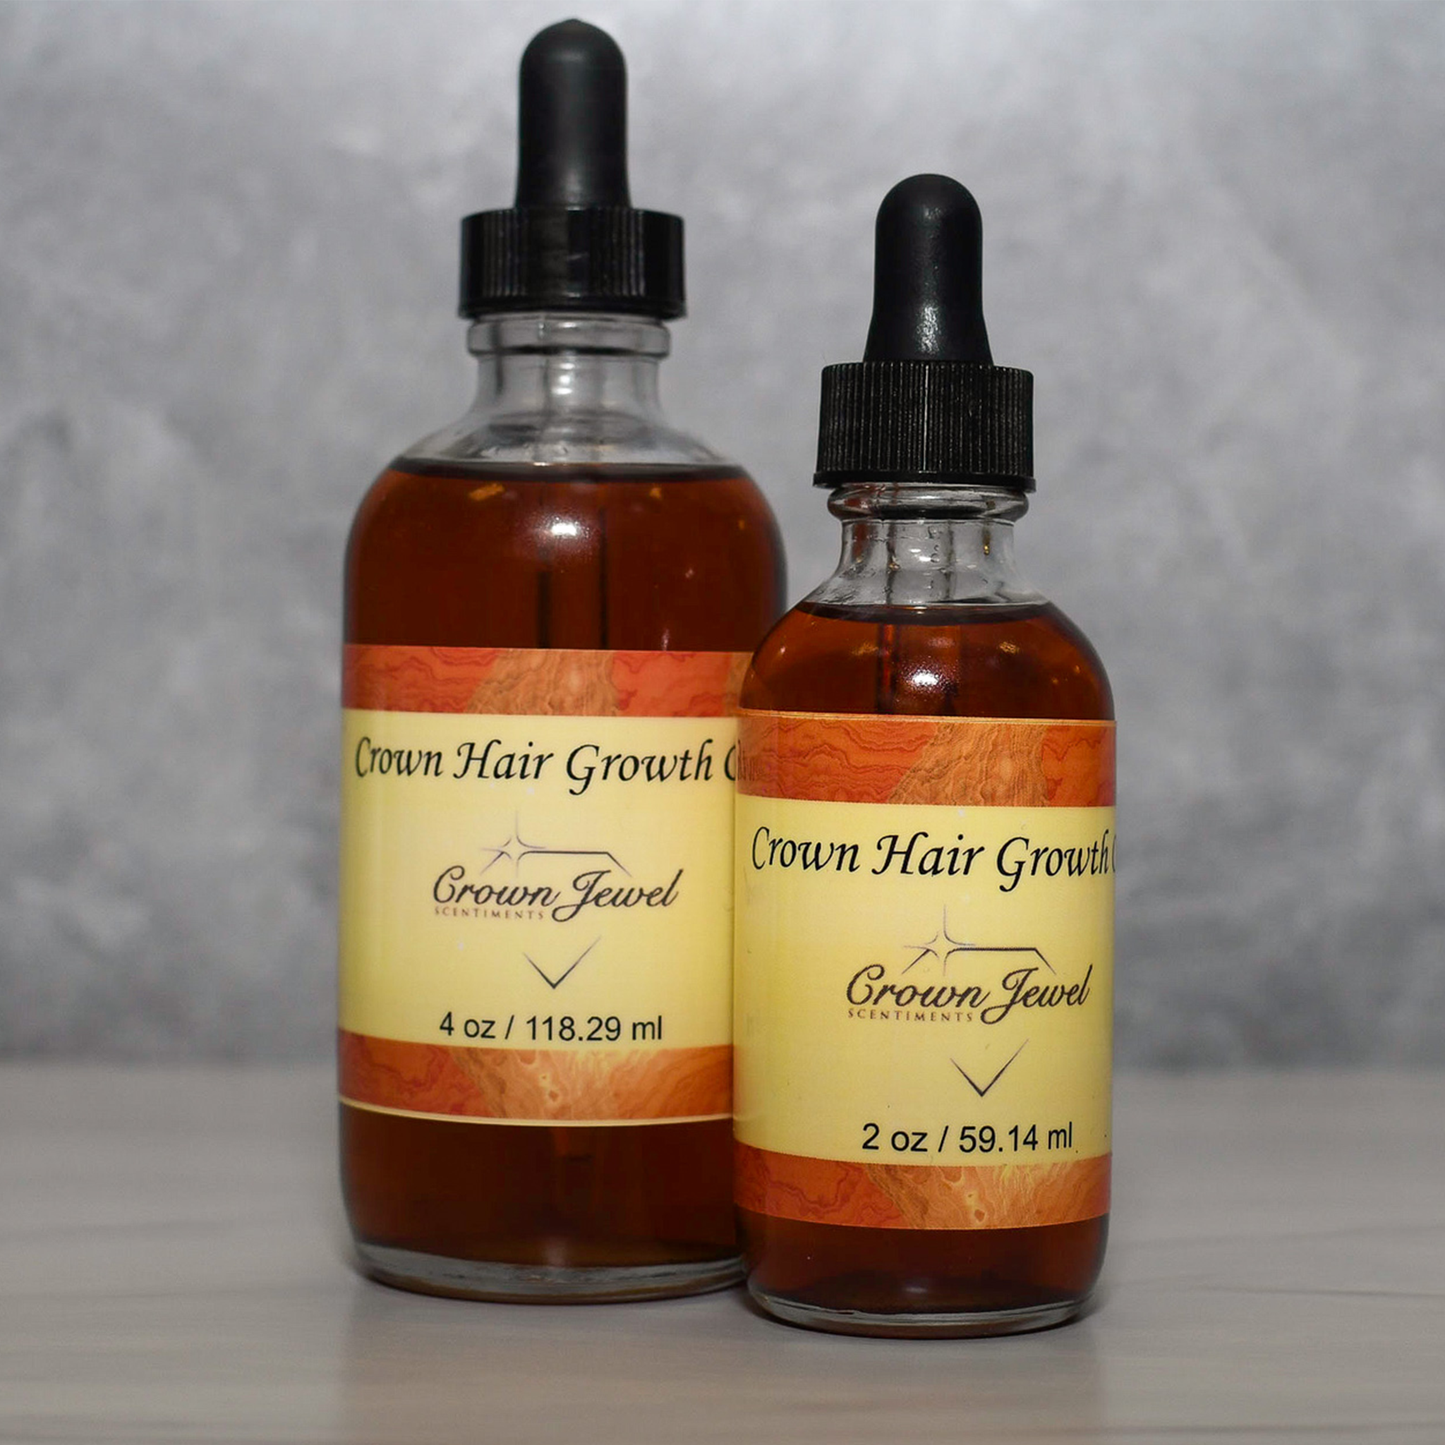 Crown Hair Growth Oil